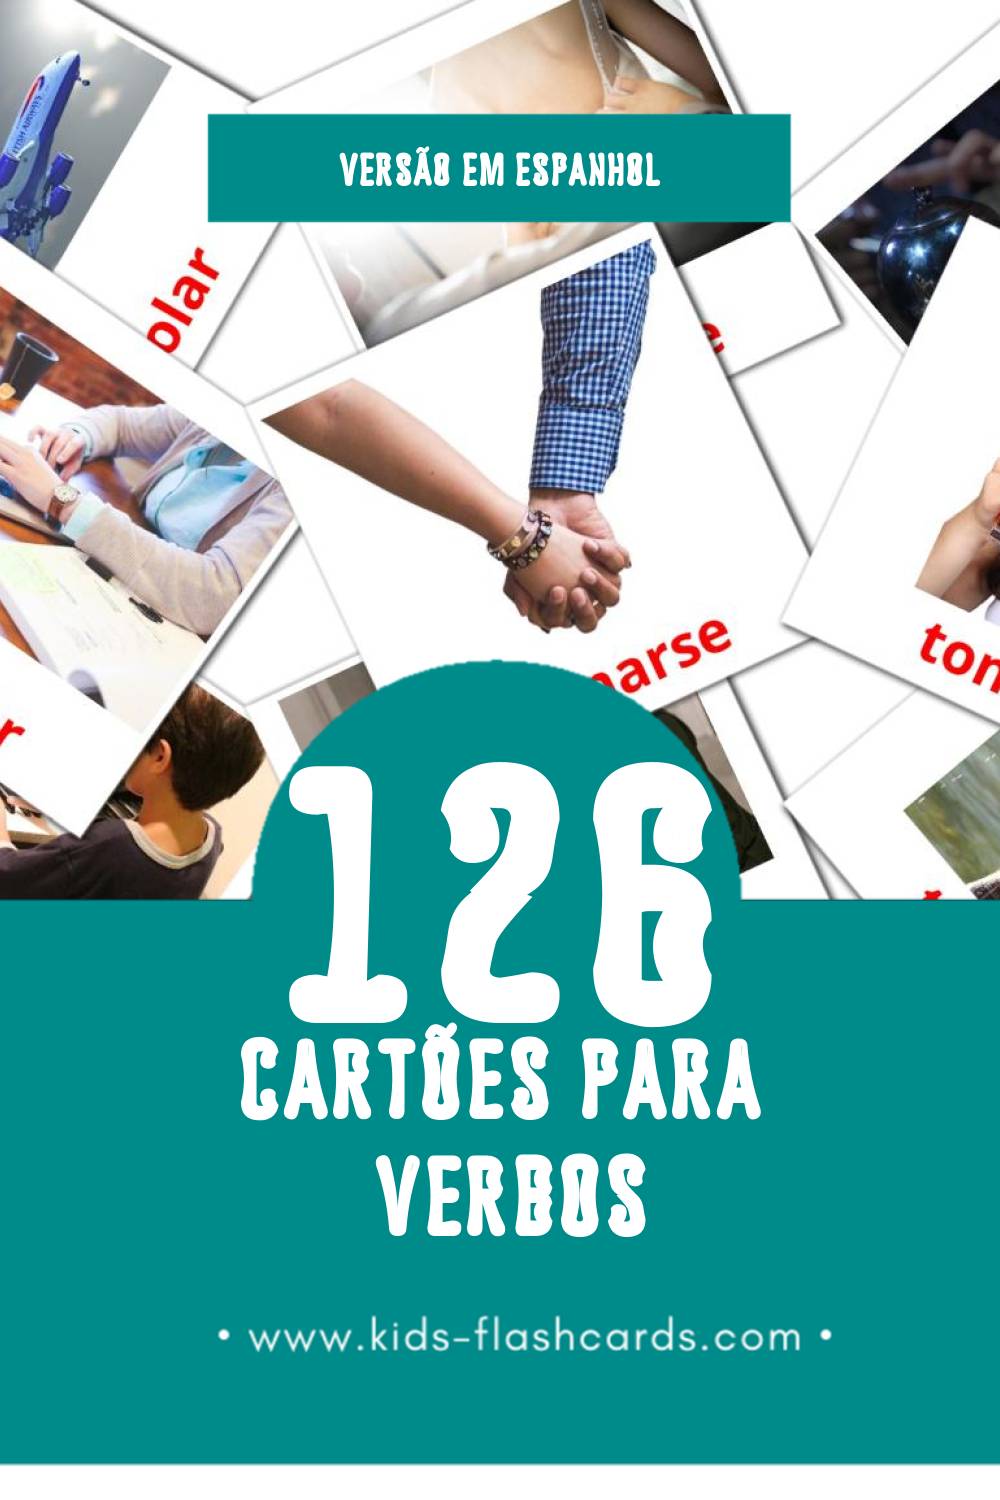 Flashcards de Verbosa Visuais para Toddlers (132 cartões em Espanhol)